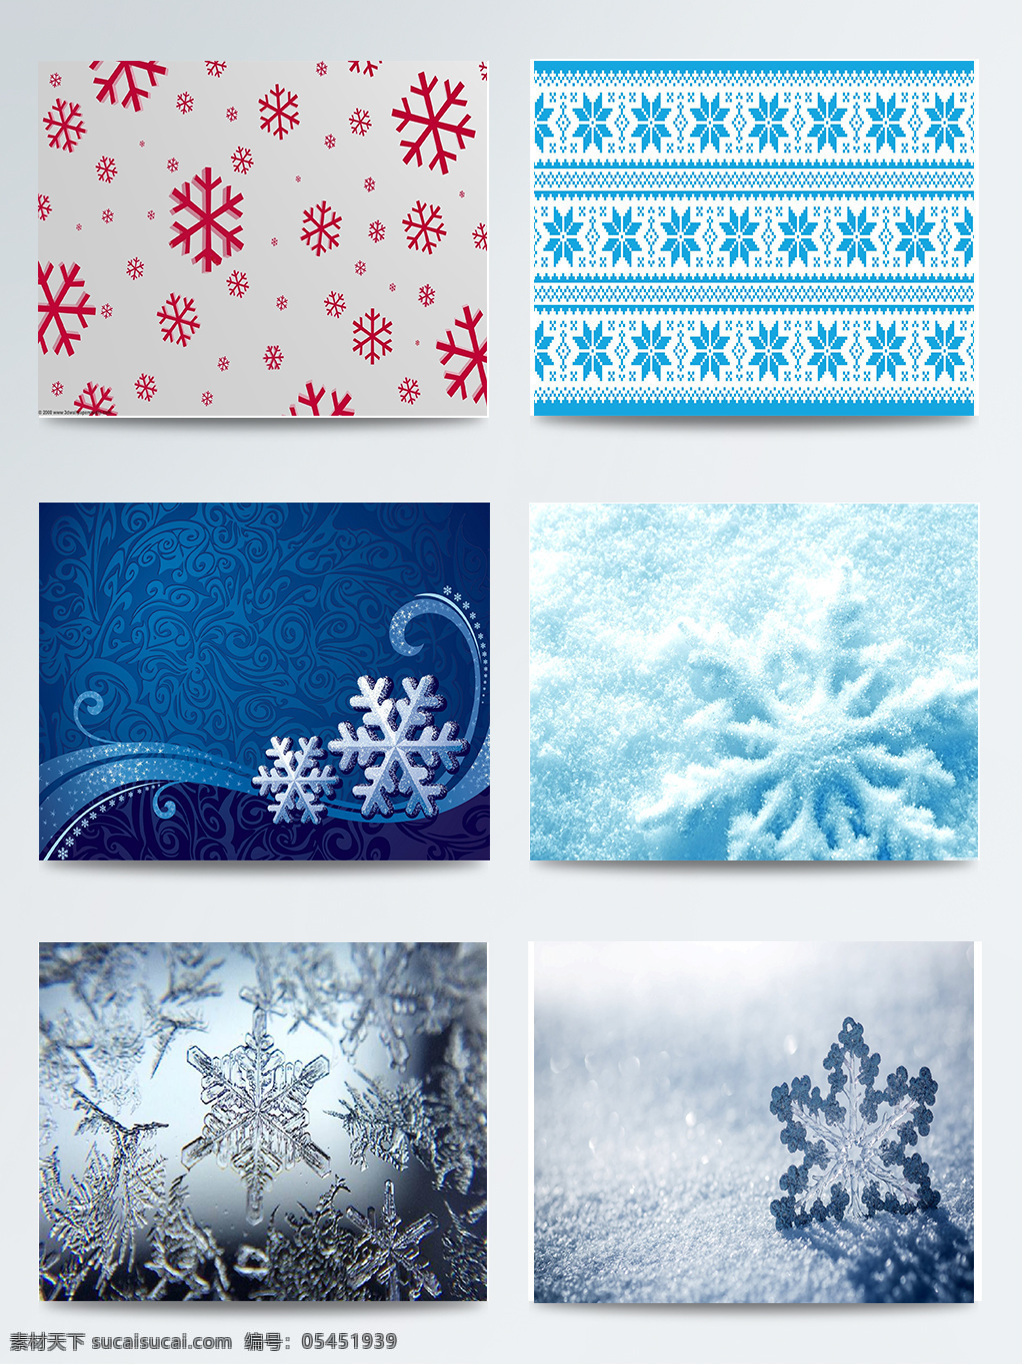 组 蓝色 雪花 背景 图集 白色 冬季 浅白色 浅蓝色 深蓝色 水蓝色